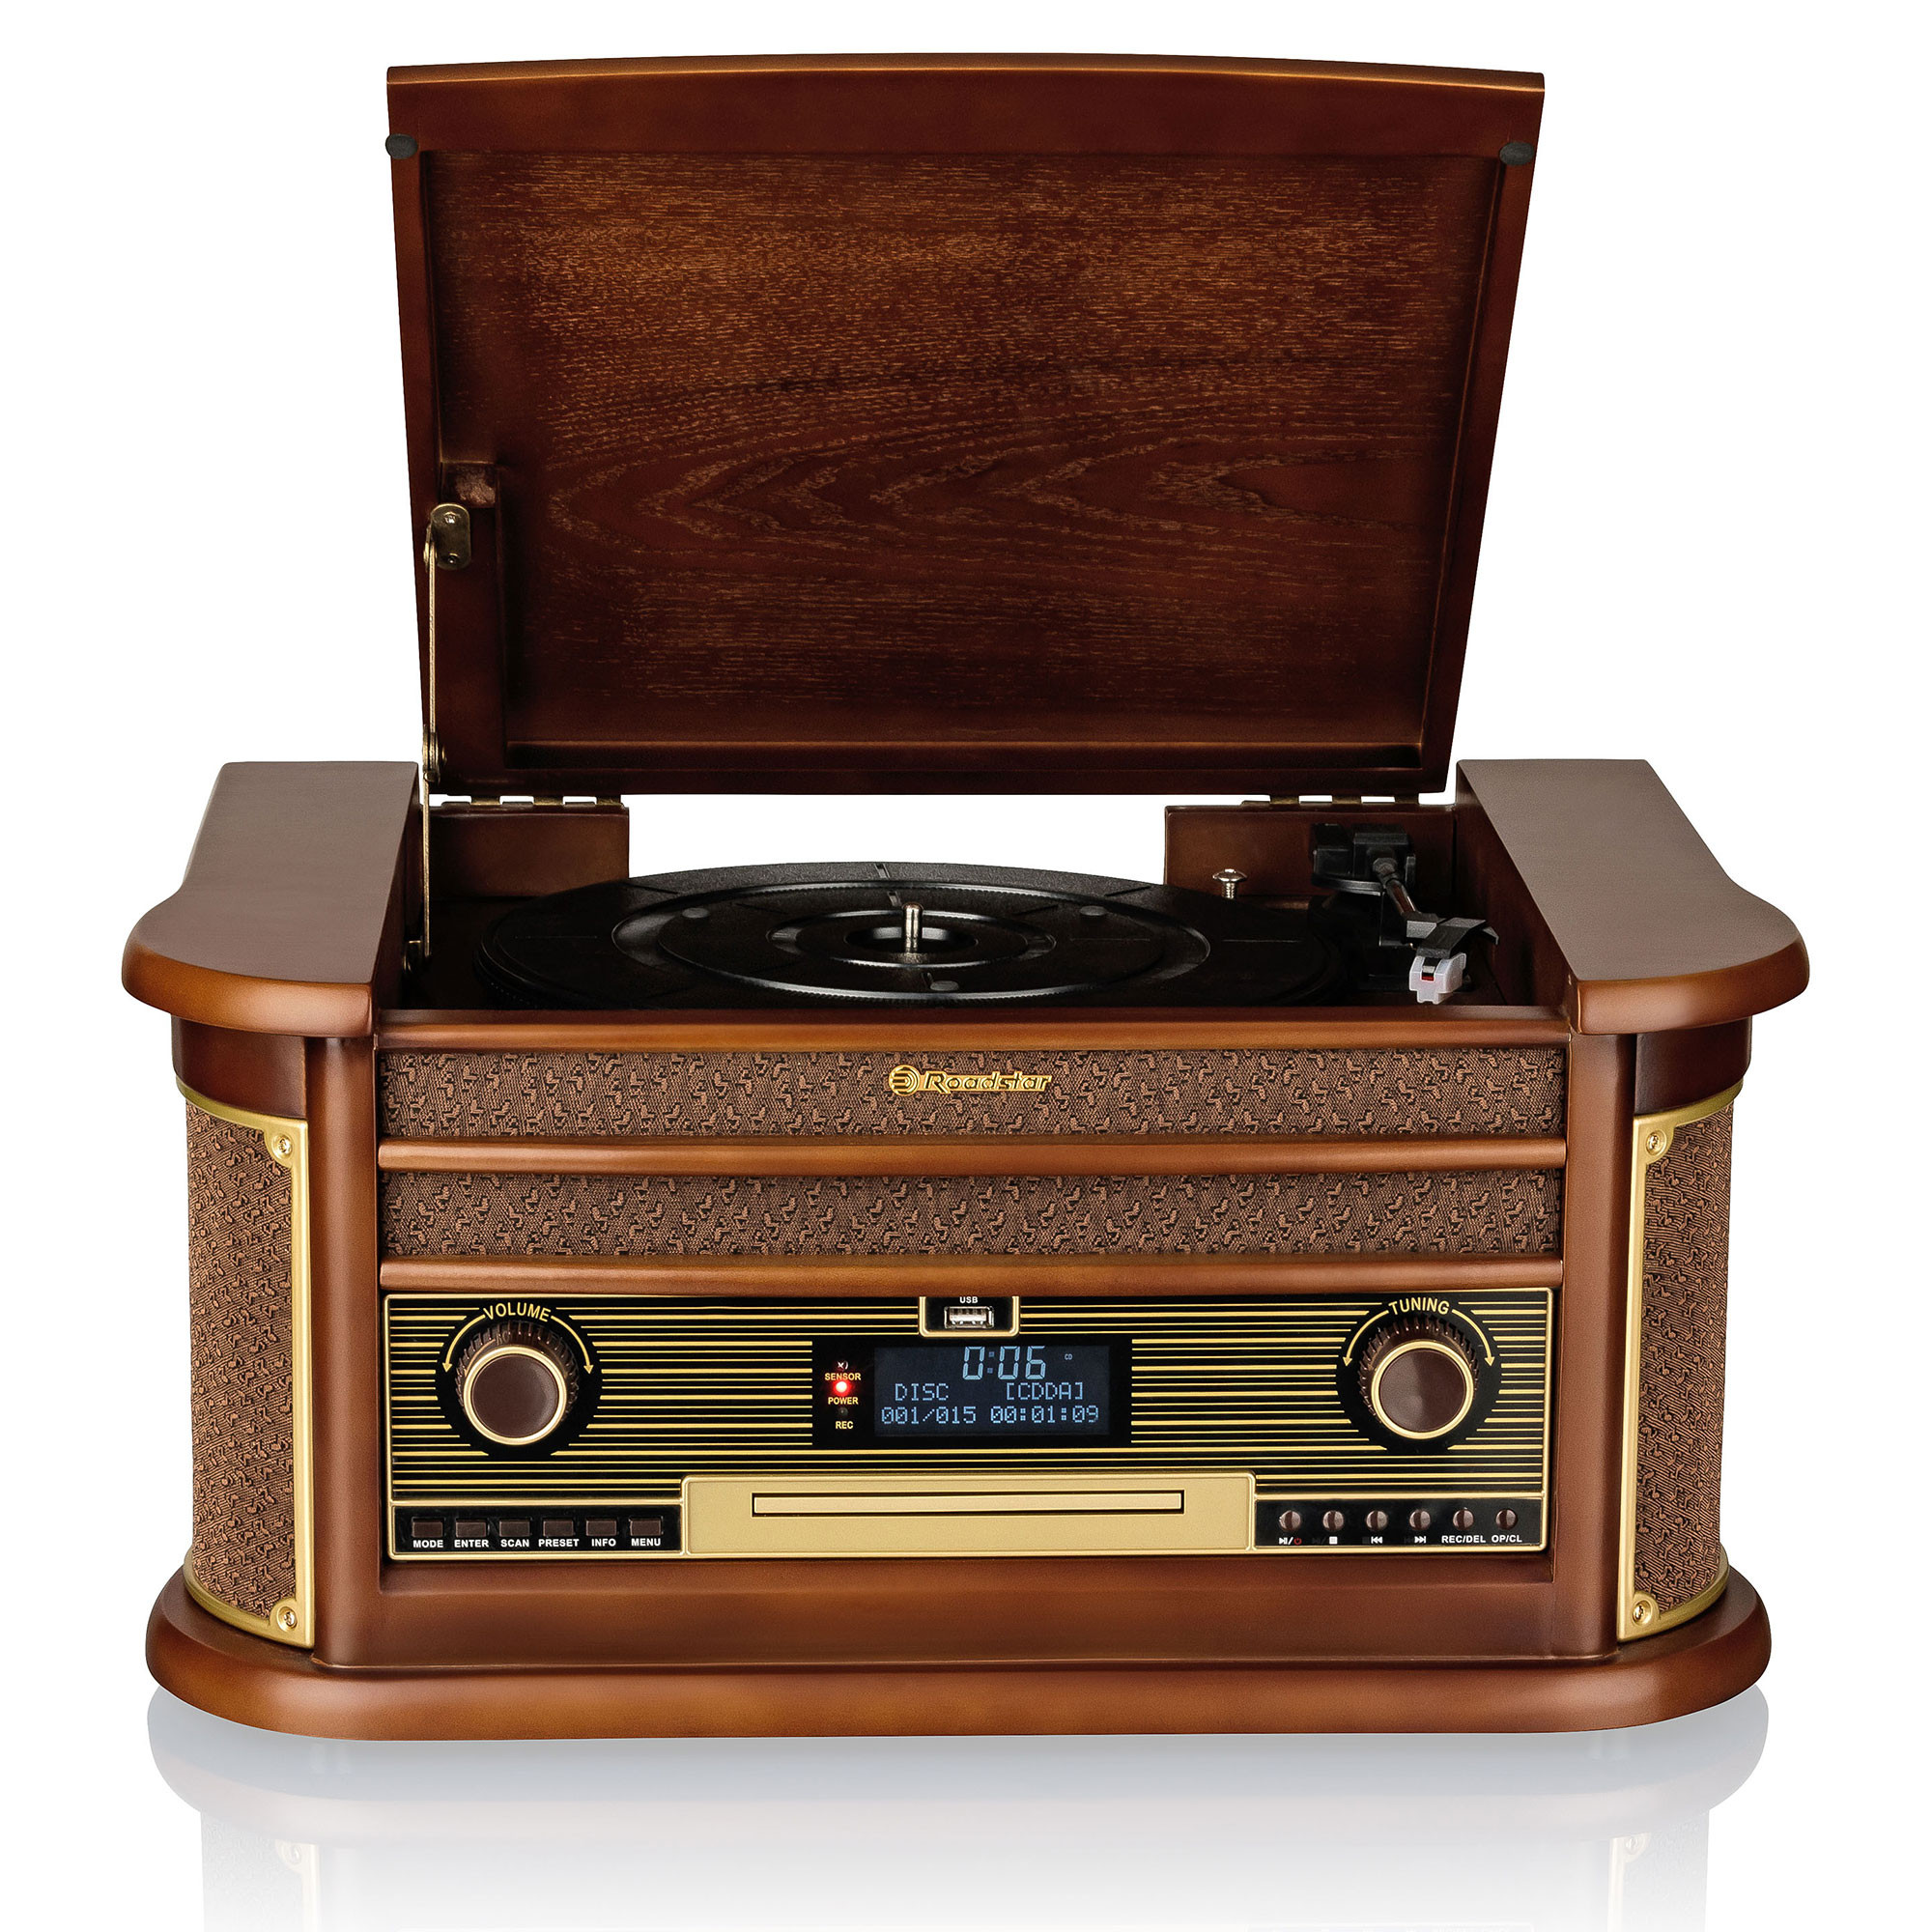 Tocadiscos Vintage, reproductor de tocadiscos de grabación, 33/45/78 RPM  Reproductor de tocadiscos portátil de audio para maleta, altavoces estéreo